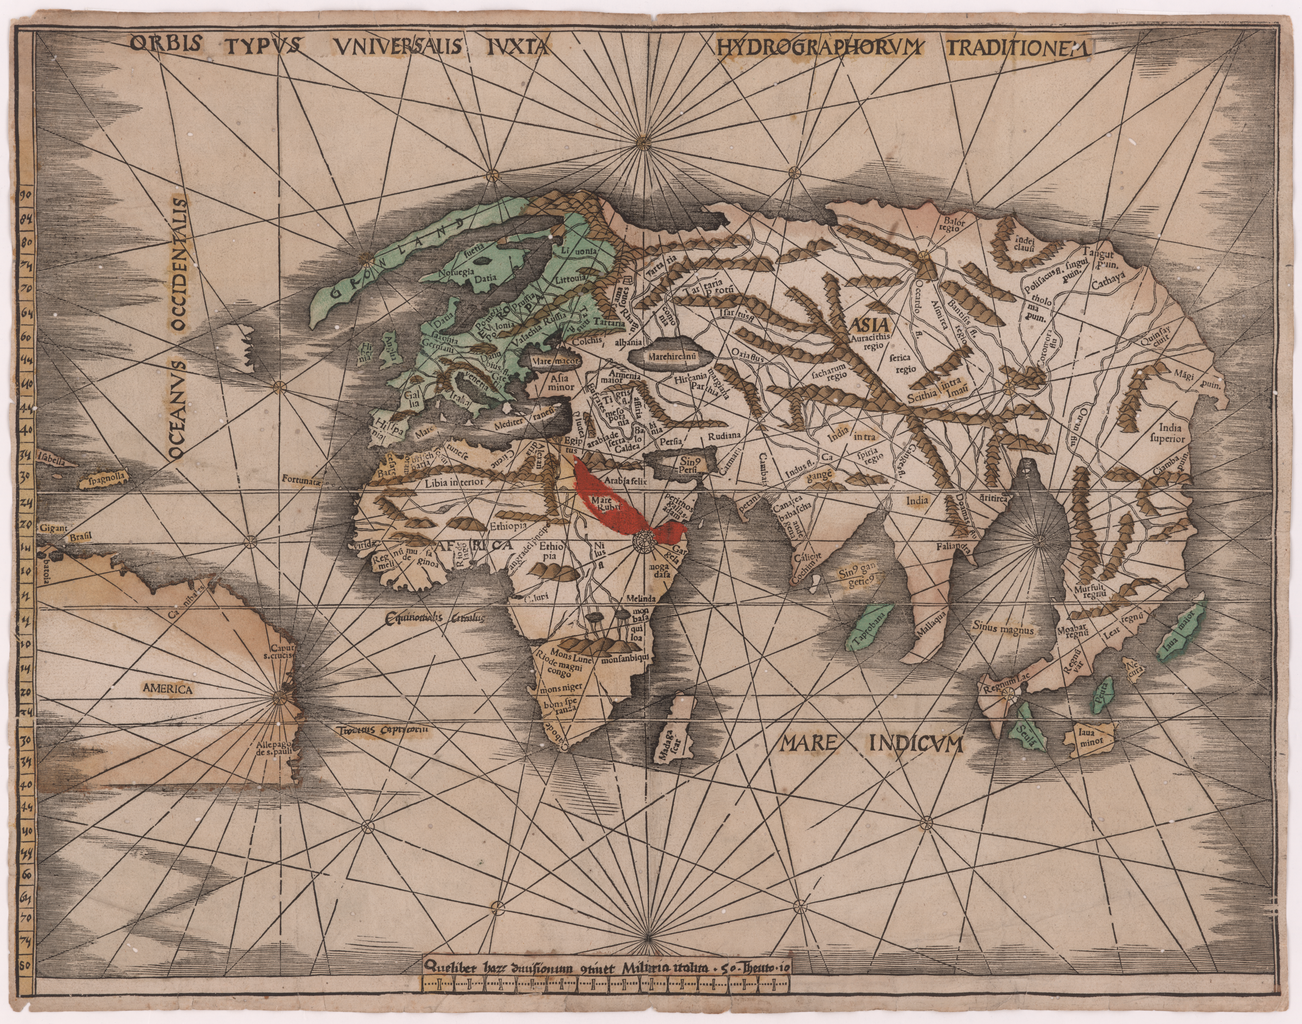 十六世纪的欧洲制图师绘制的地图:充满神秘色彩